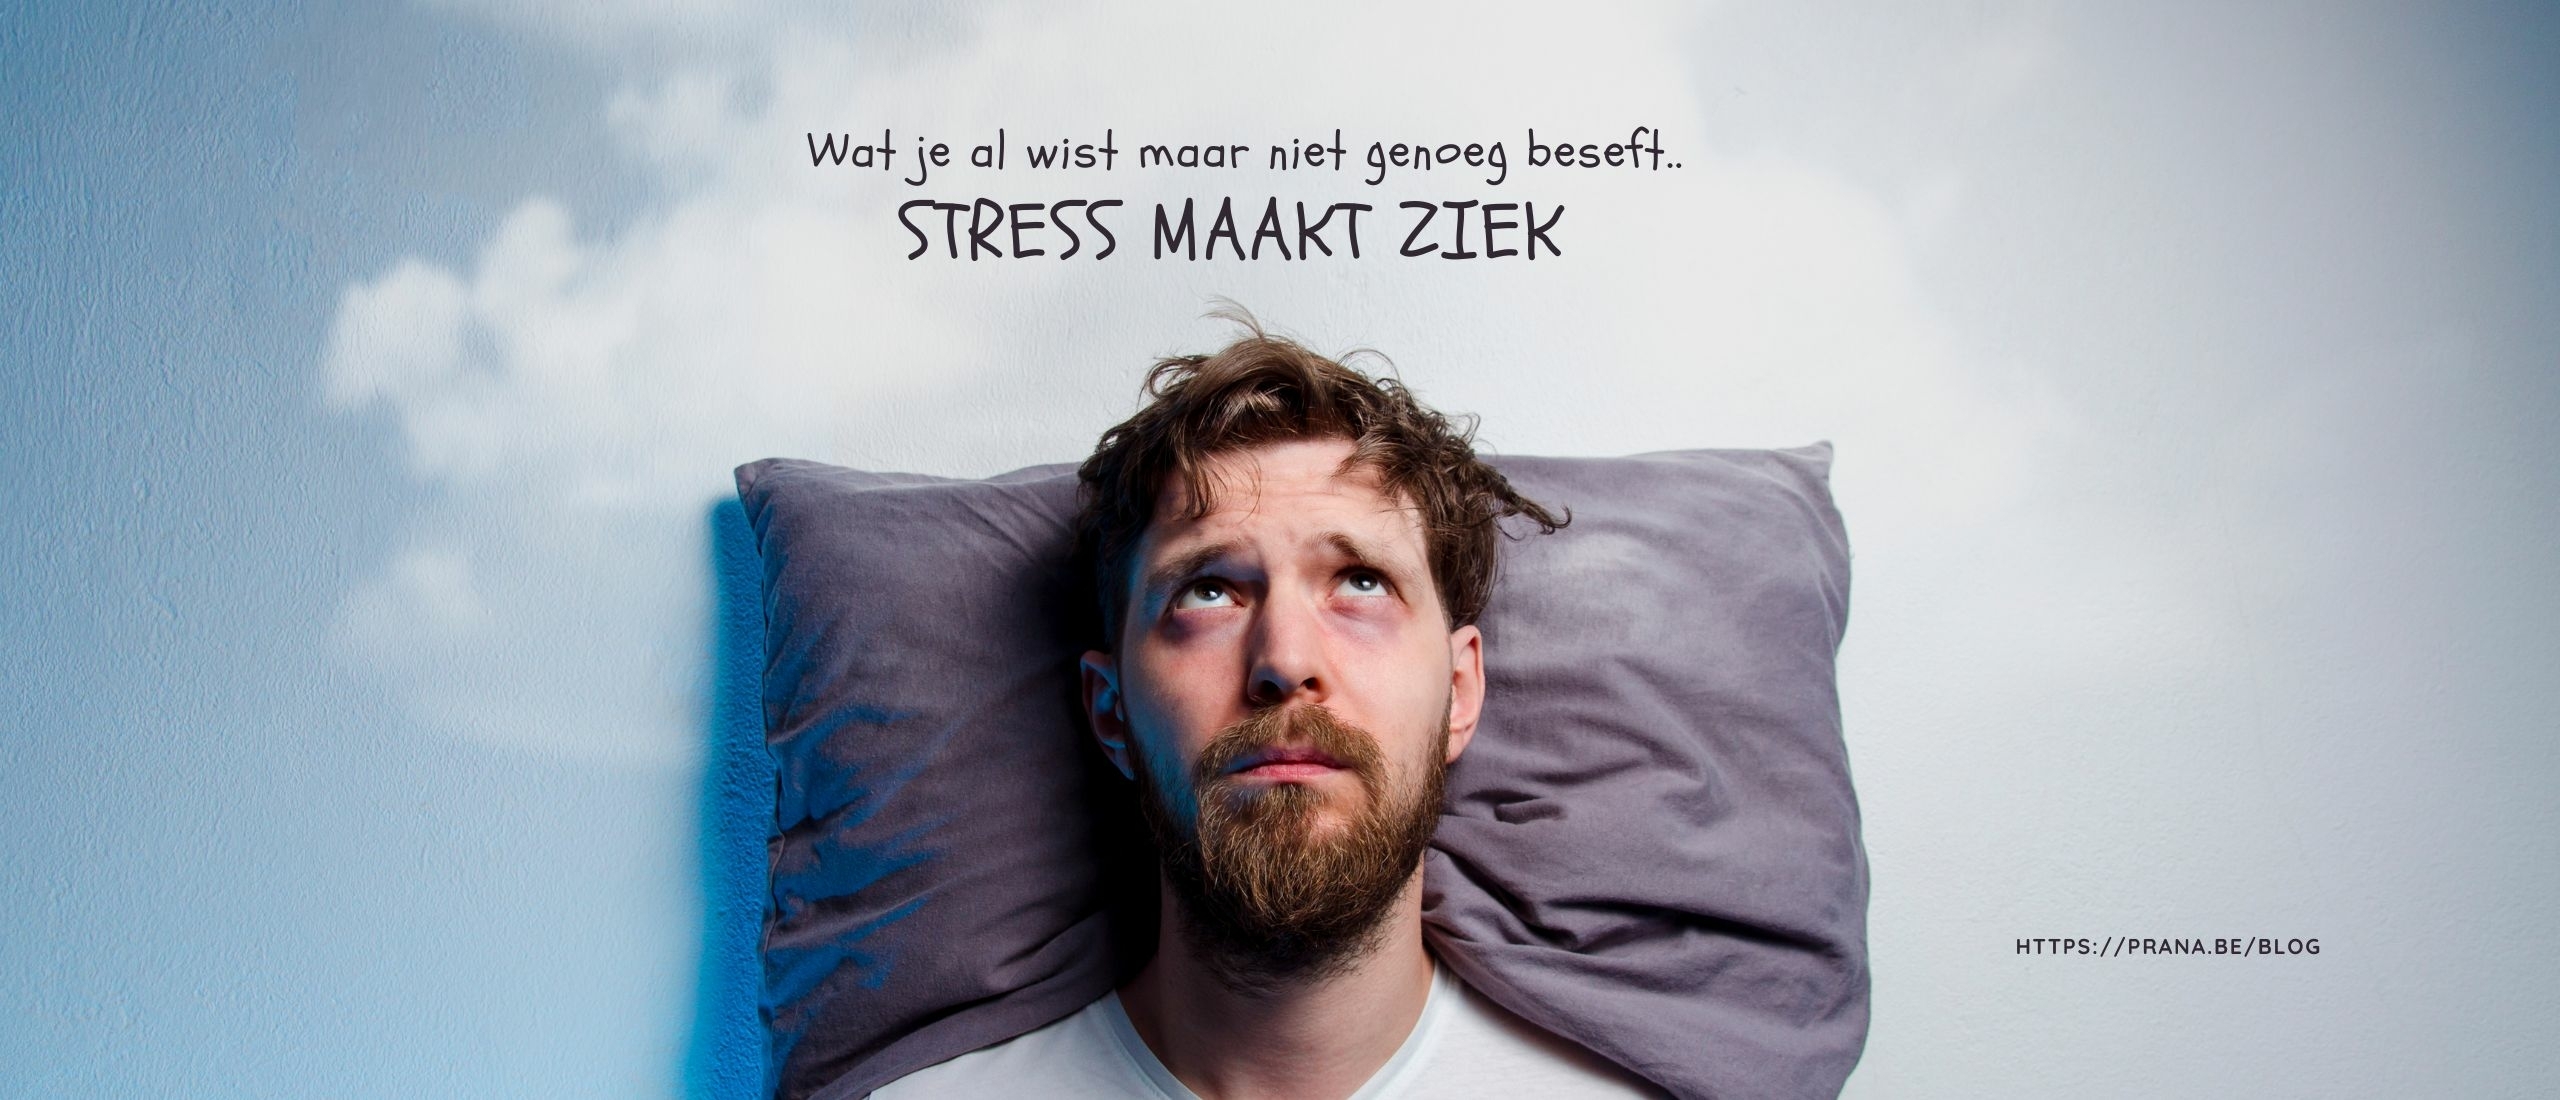 Wat je al wist maar niet genoeg beseft: Stress maakt ziek